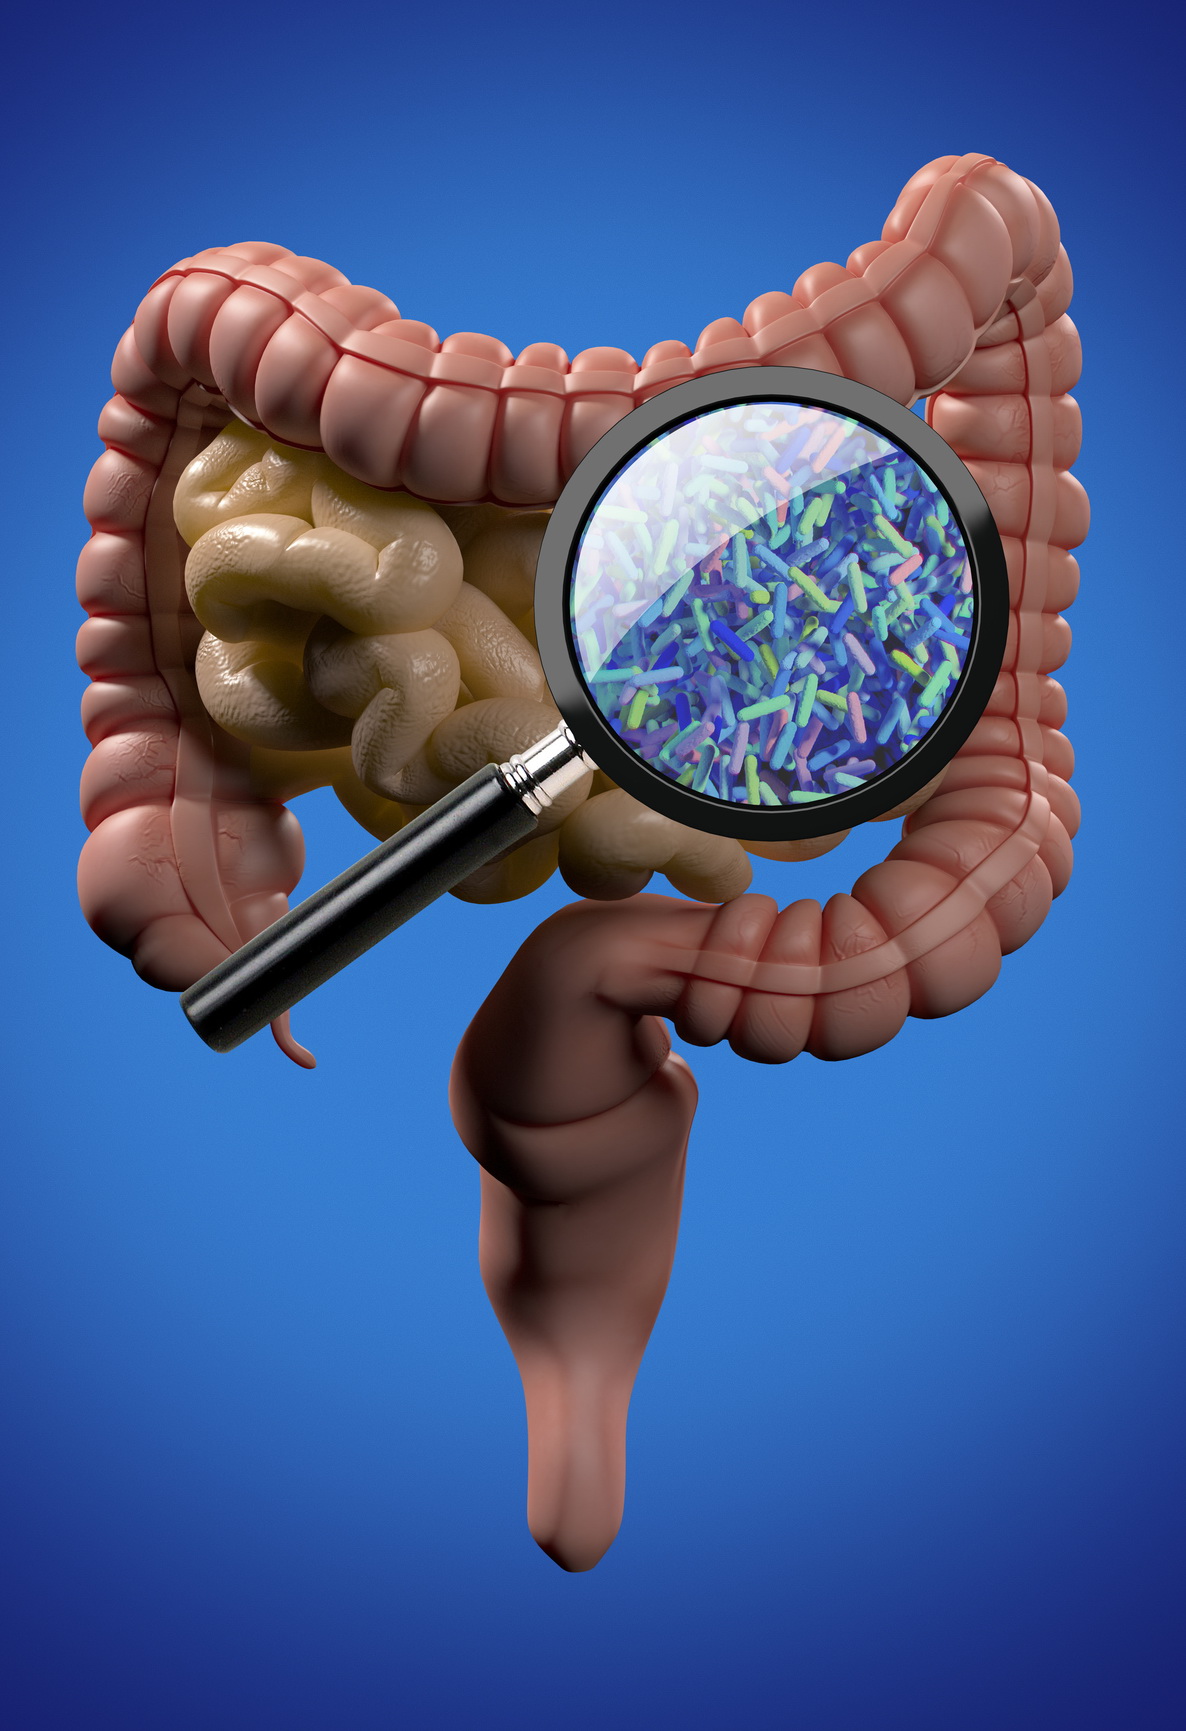 Immunoterapia, il ruolo della dieta e del microbioma intestinale nella risposta alle terapie